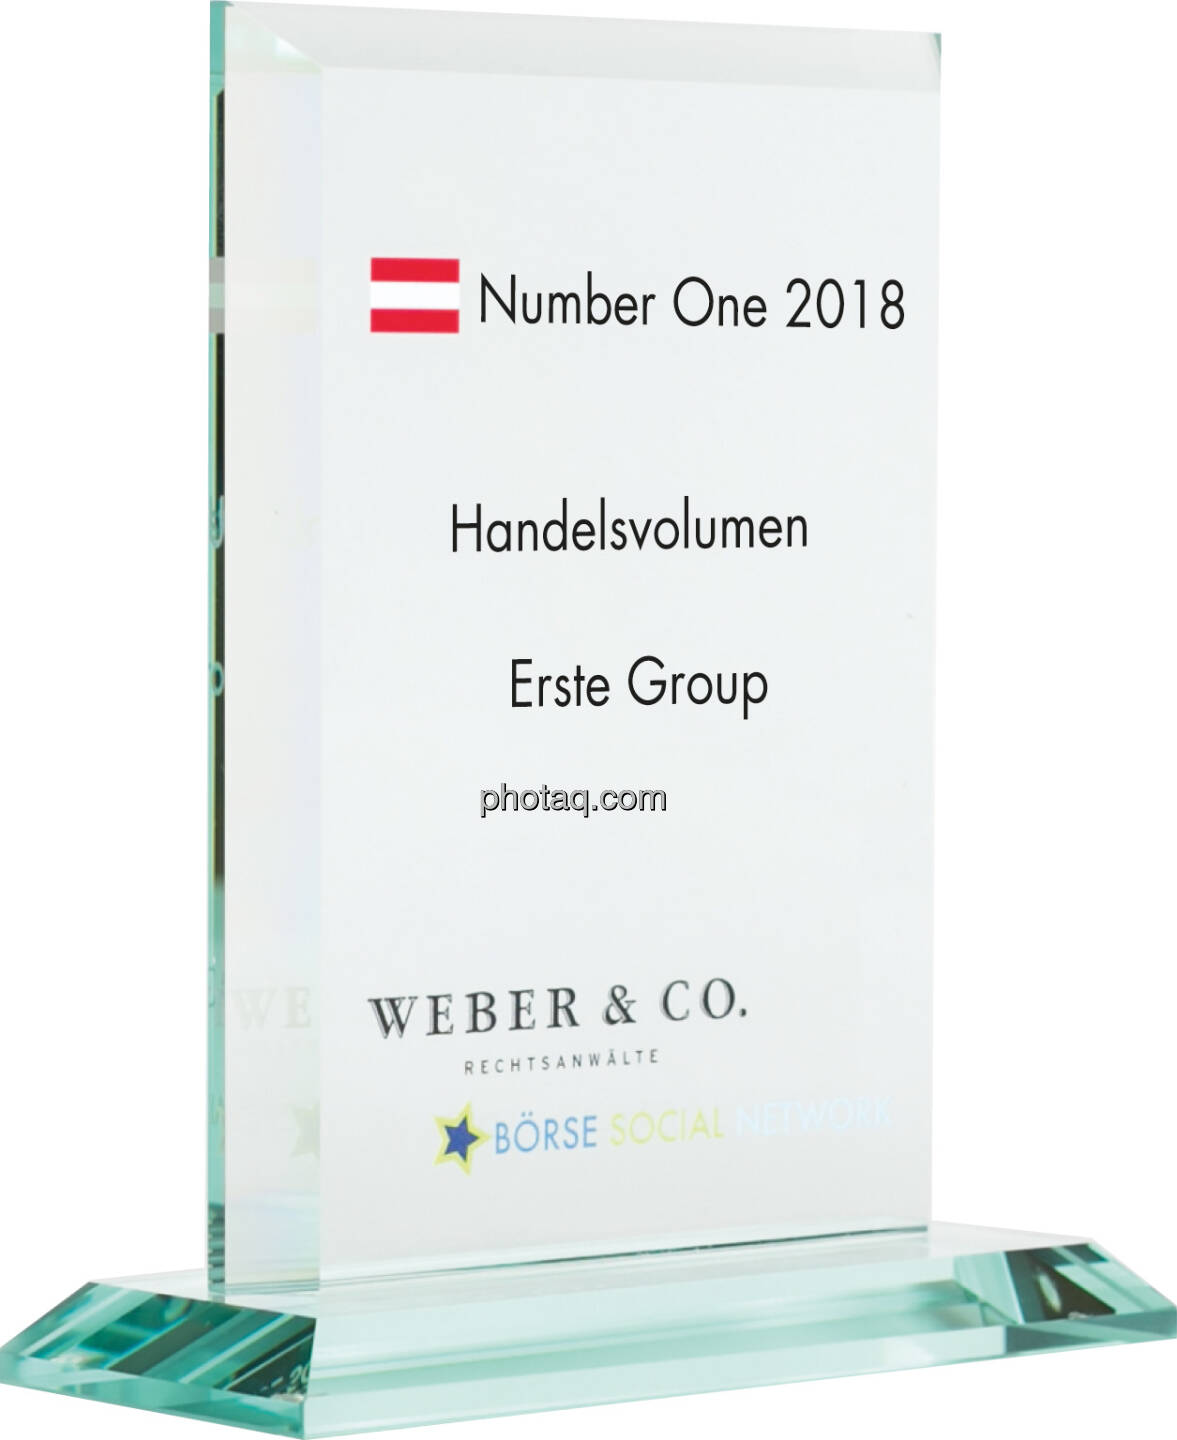 Number One Awards 2018 - Handelsvolumen Erste Group